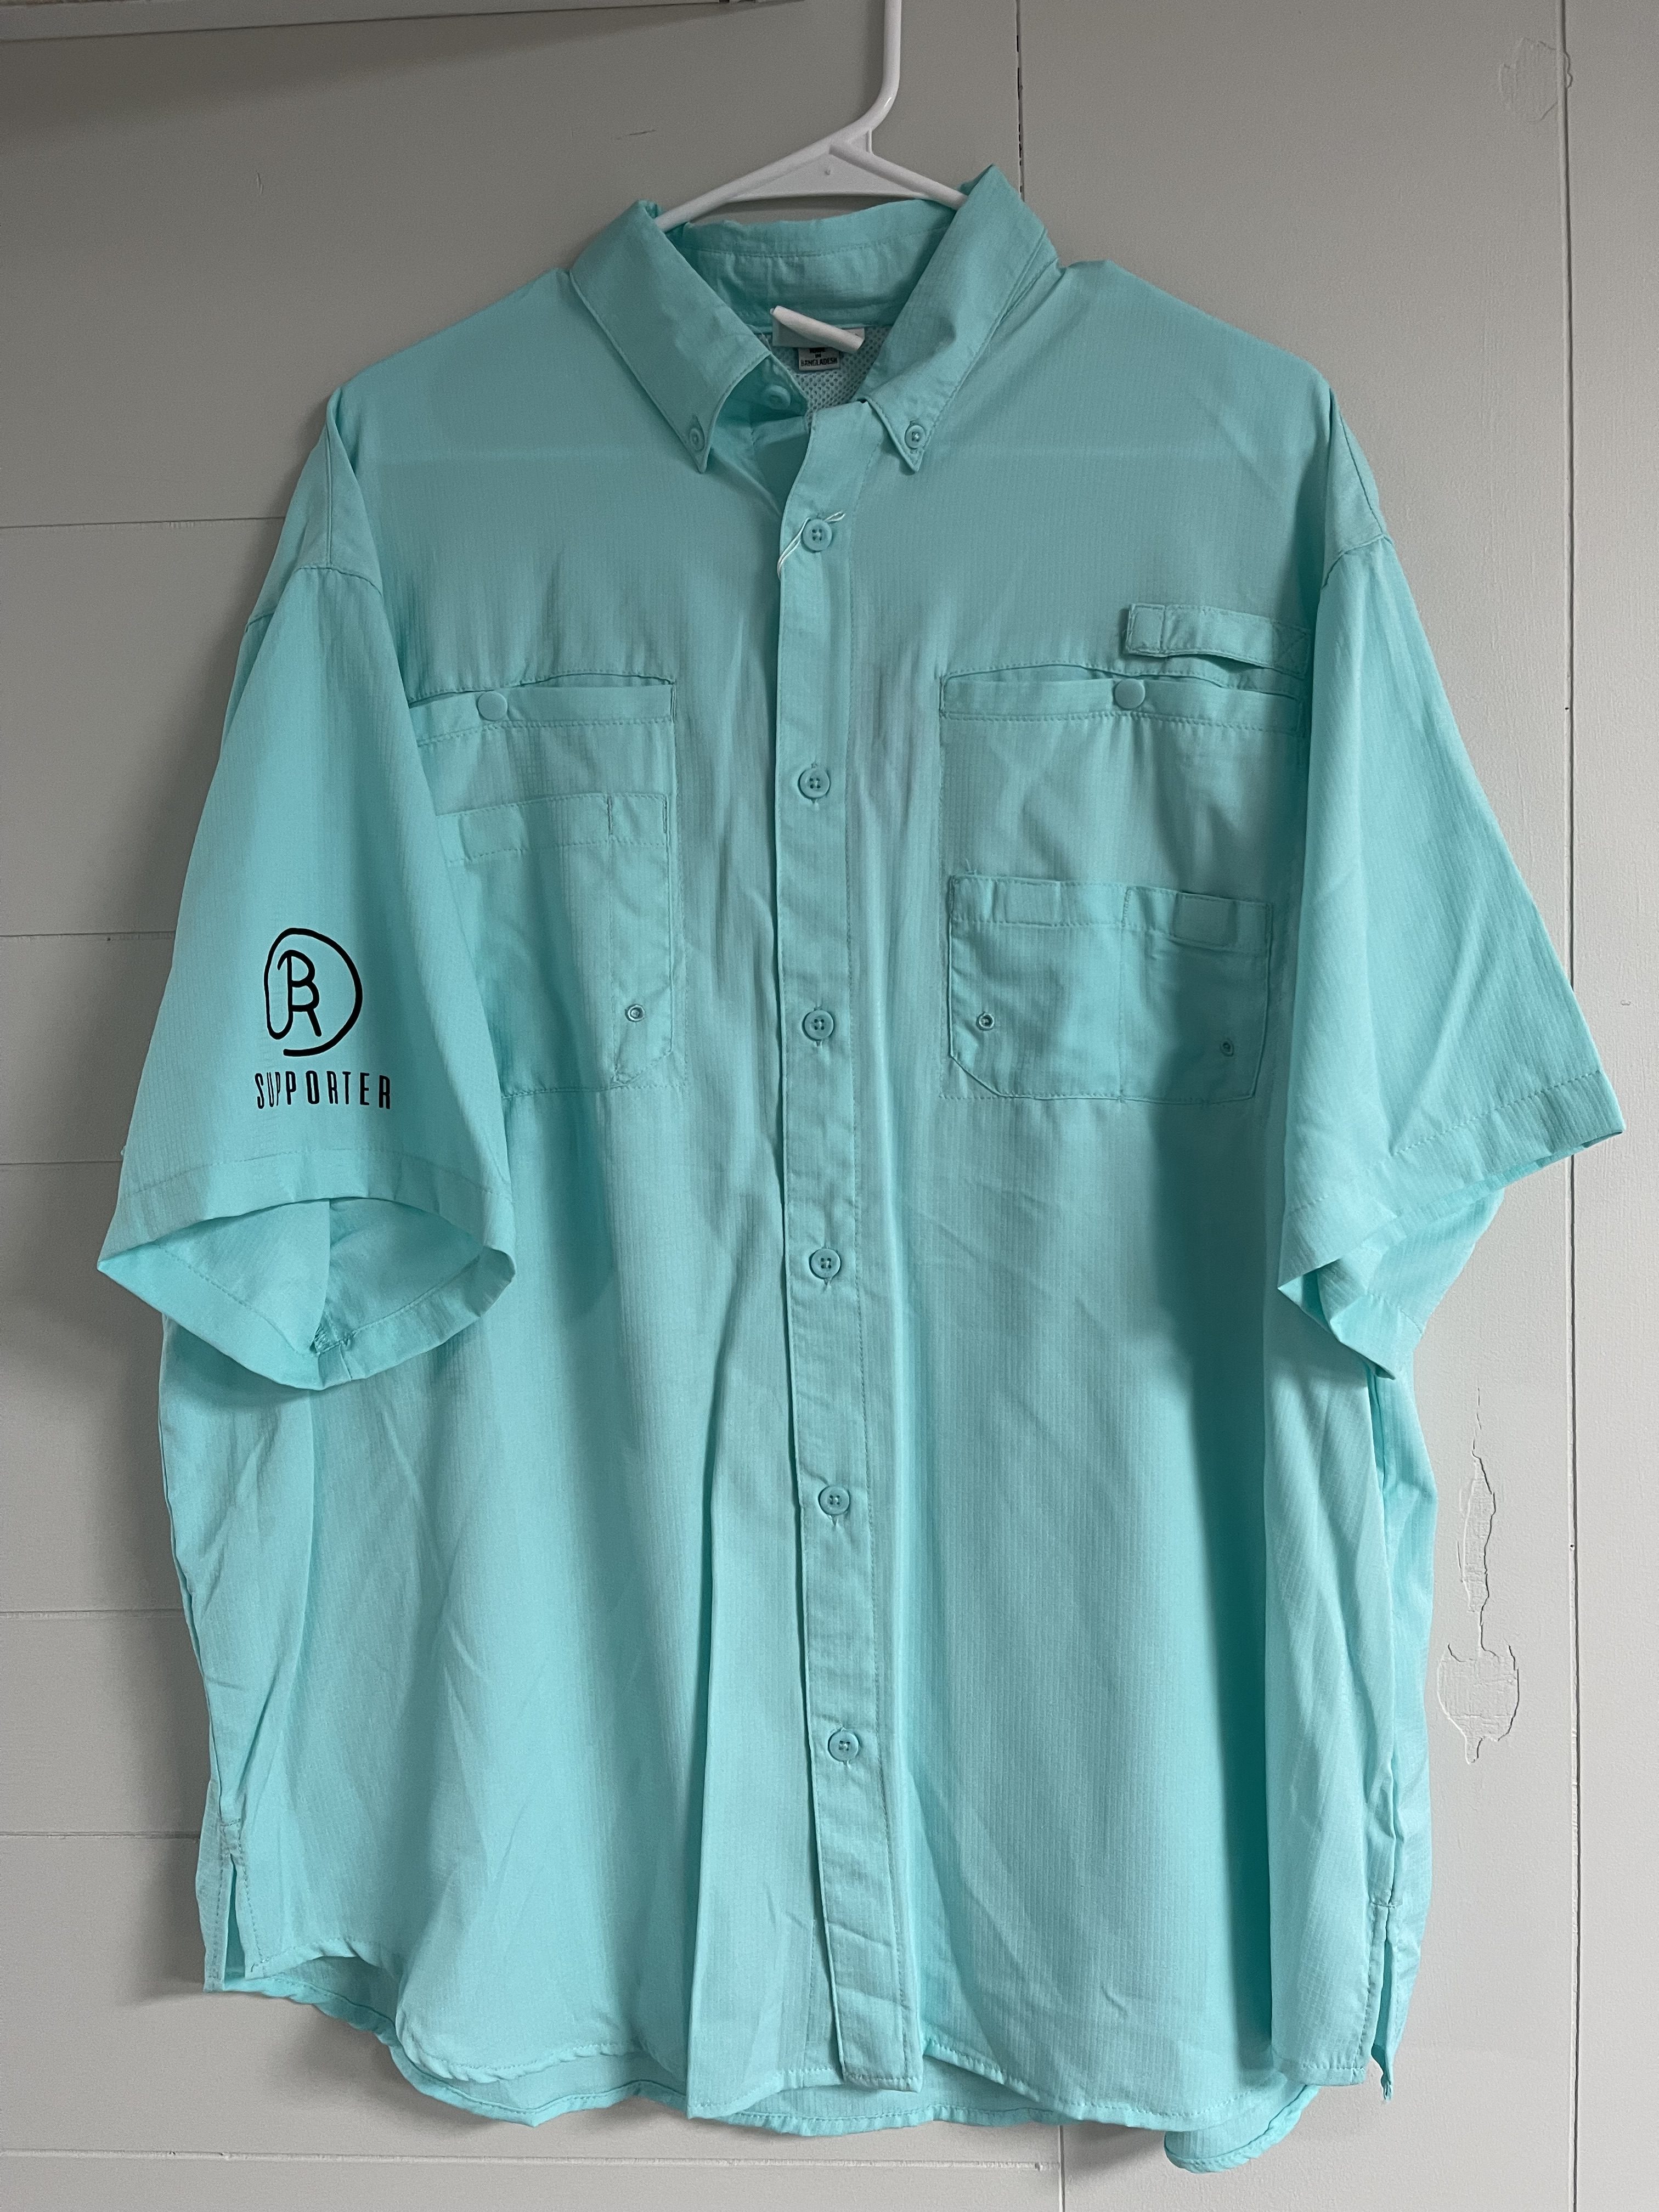 Magellan Fishing Shirt Men's Large  Mens fishing shirts, Mens shirts,  Fishing shirts